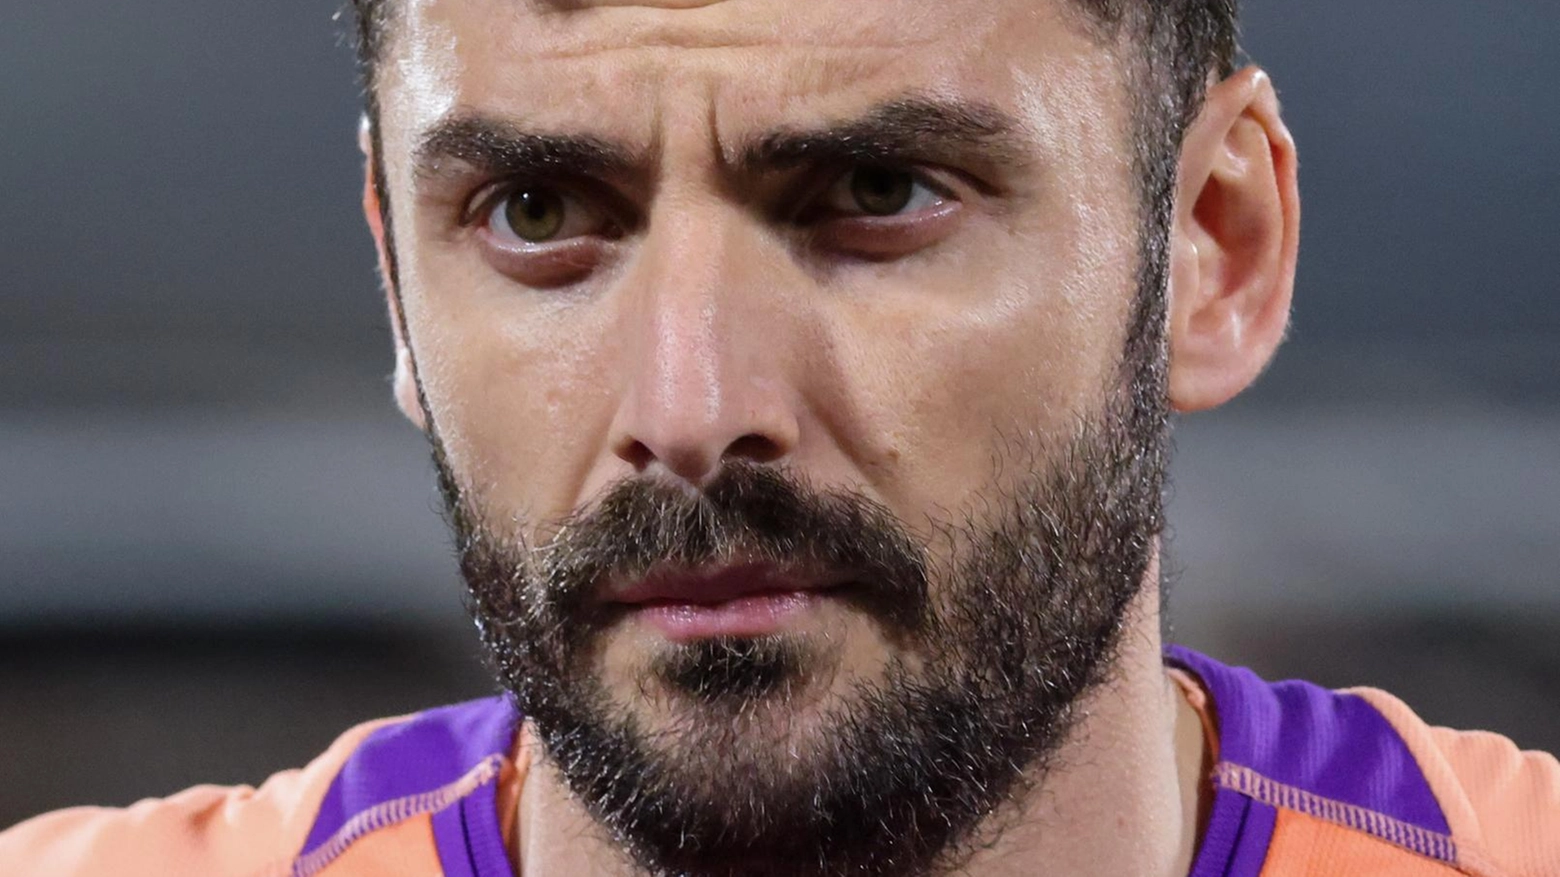 La Fiorentina vive una stagione di rimpianti e delusioni, con la sconfitta in Coppa Italia e la mancanza di compattezza. Resta la Conference League, ma l'autostima è a rischio.